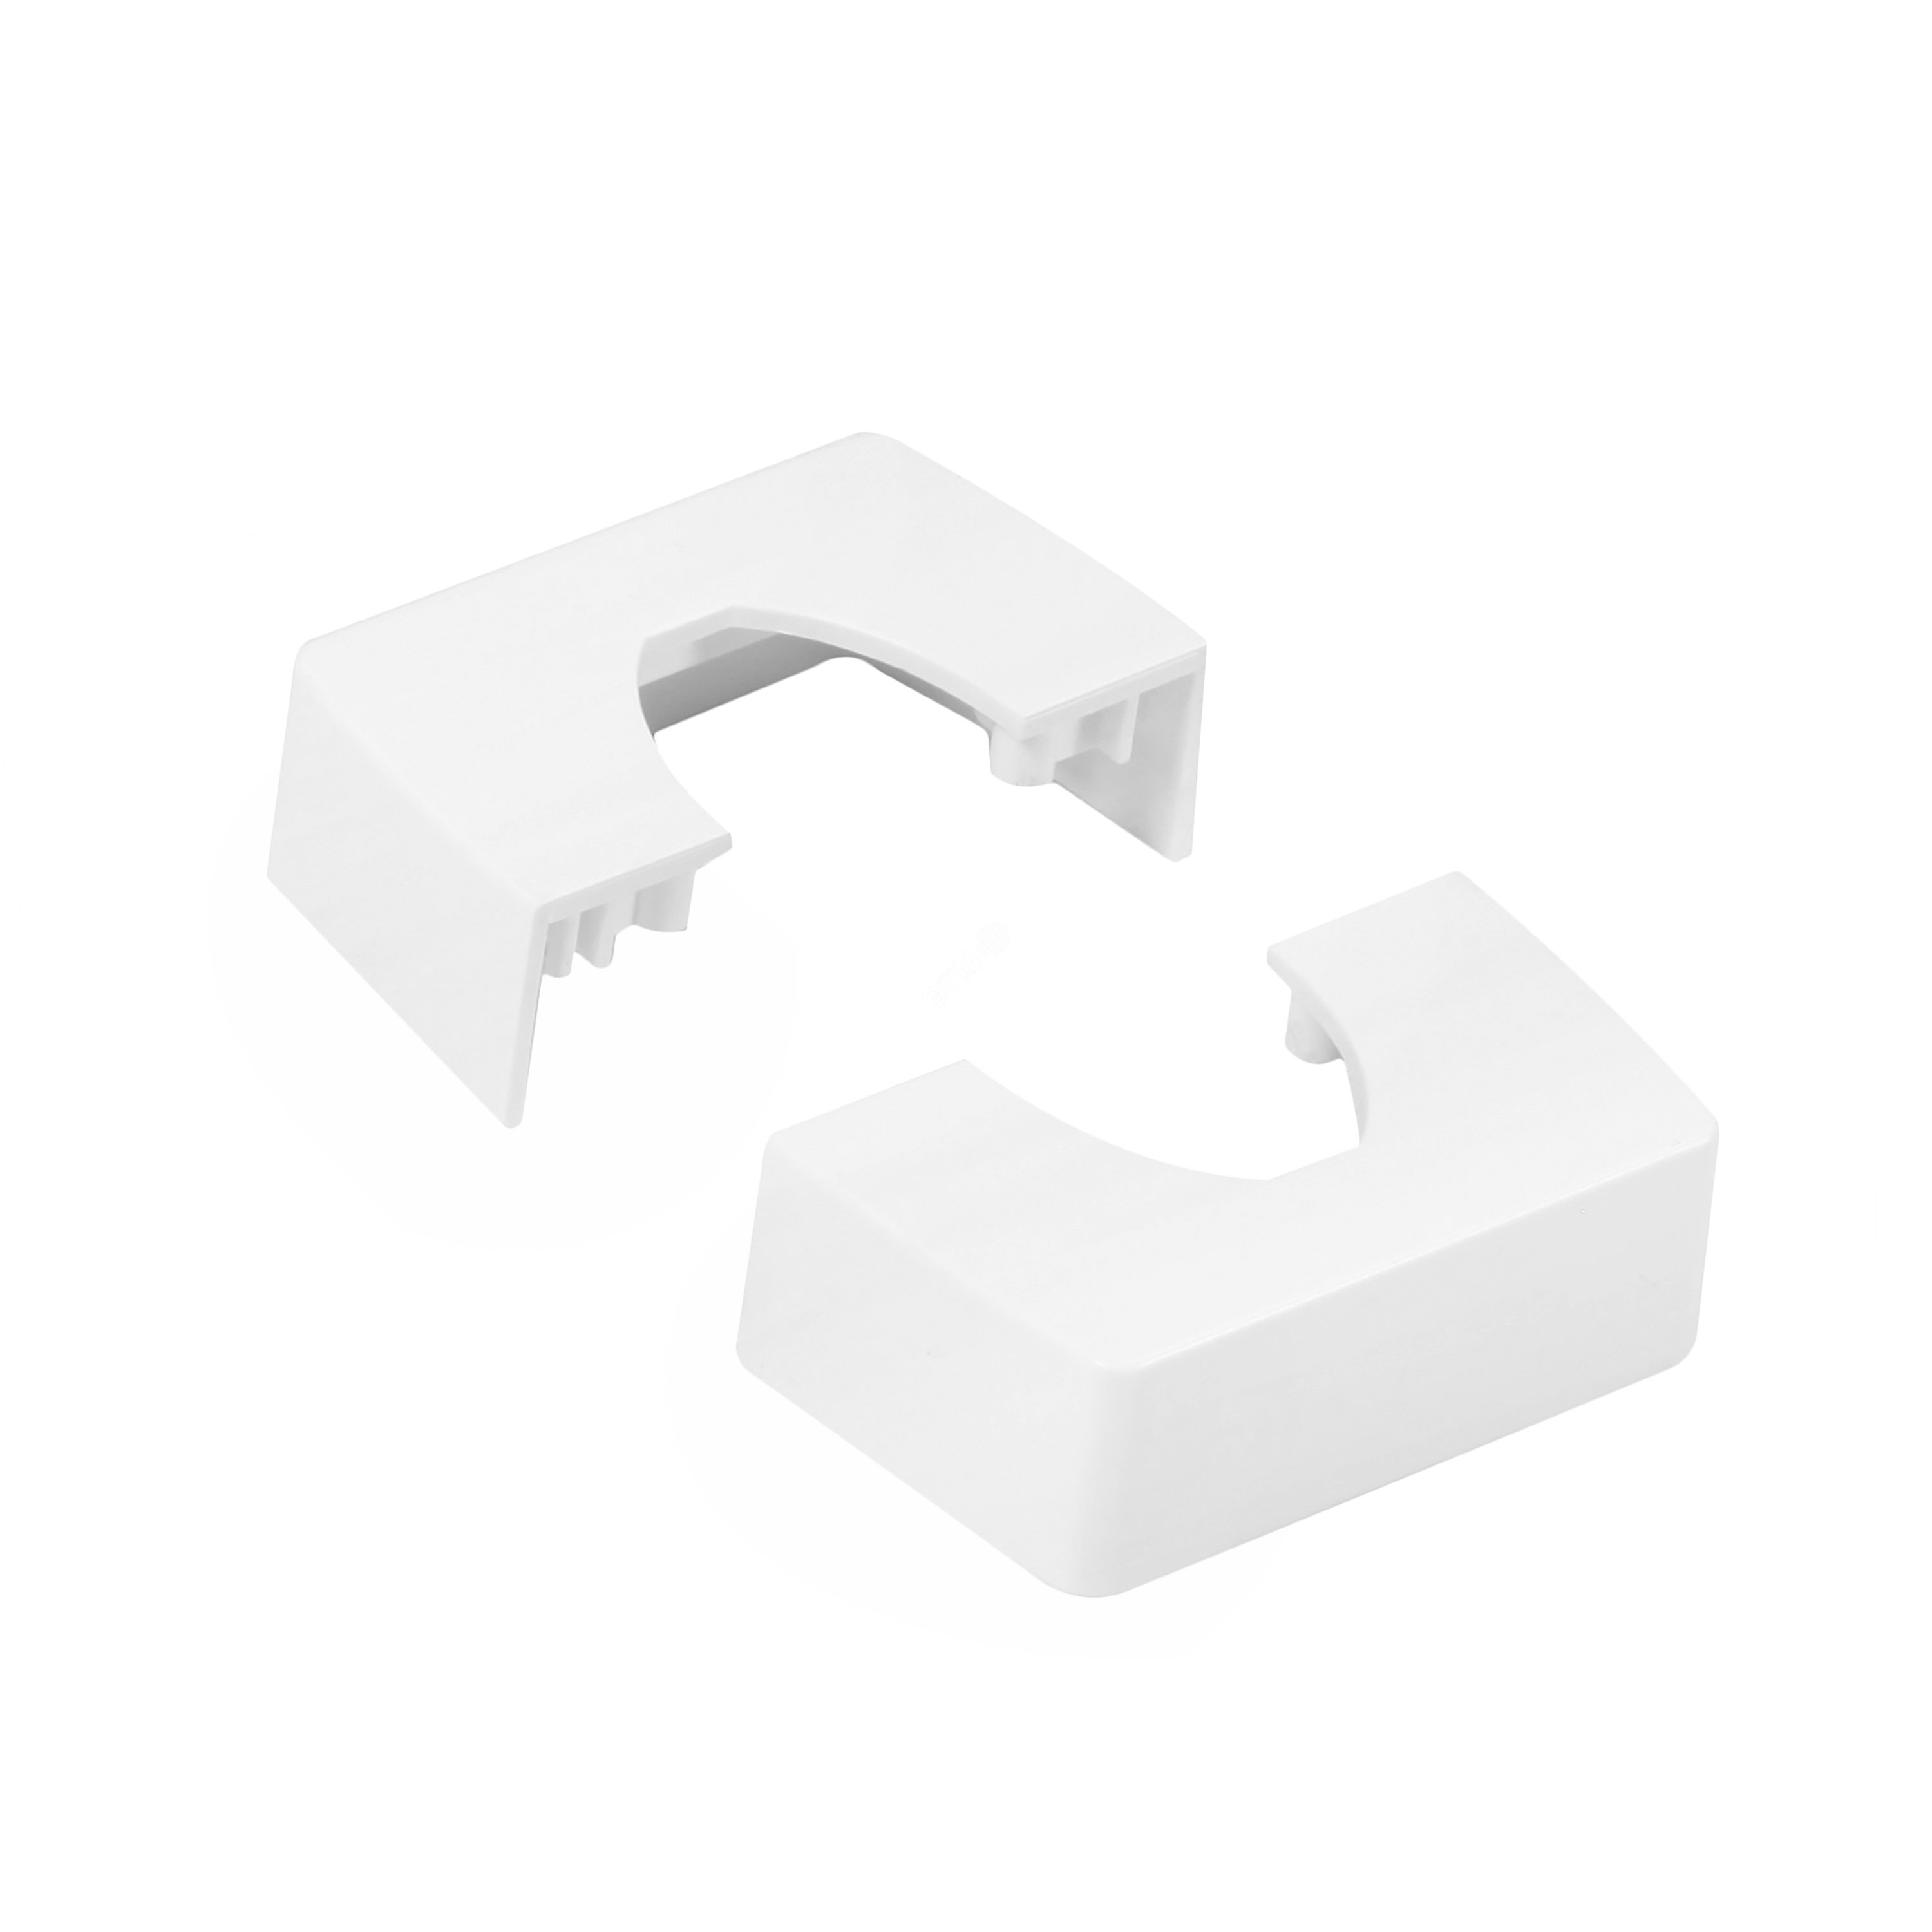 Крышка для комплекта подвода питания Ovaline через потолок пластиковая, цвет белый 980973 Legrand - превью 2